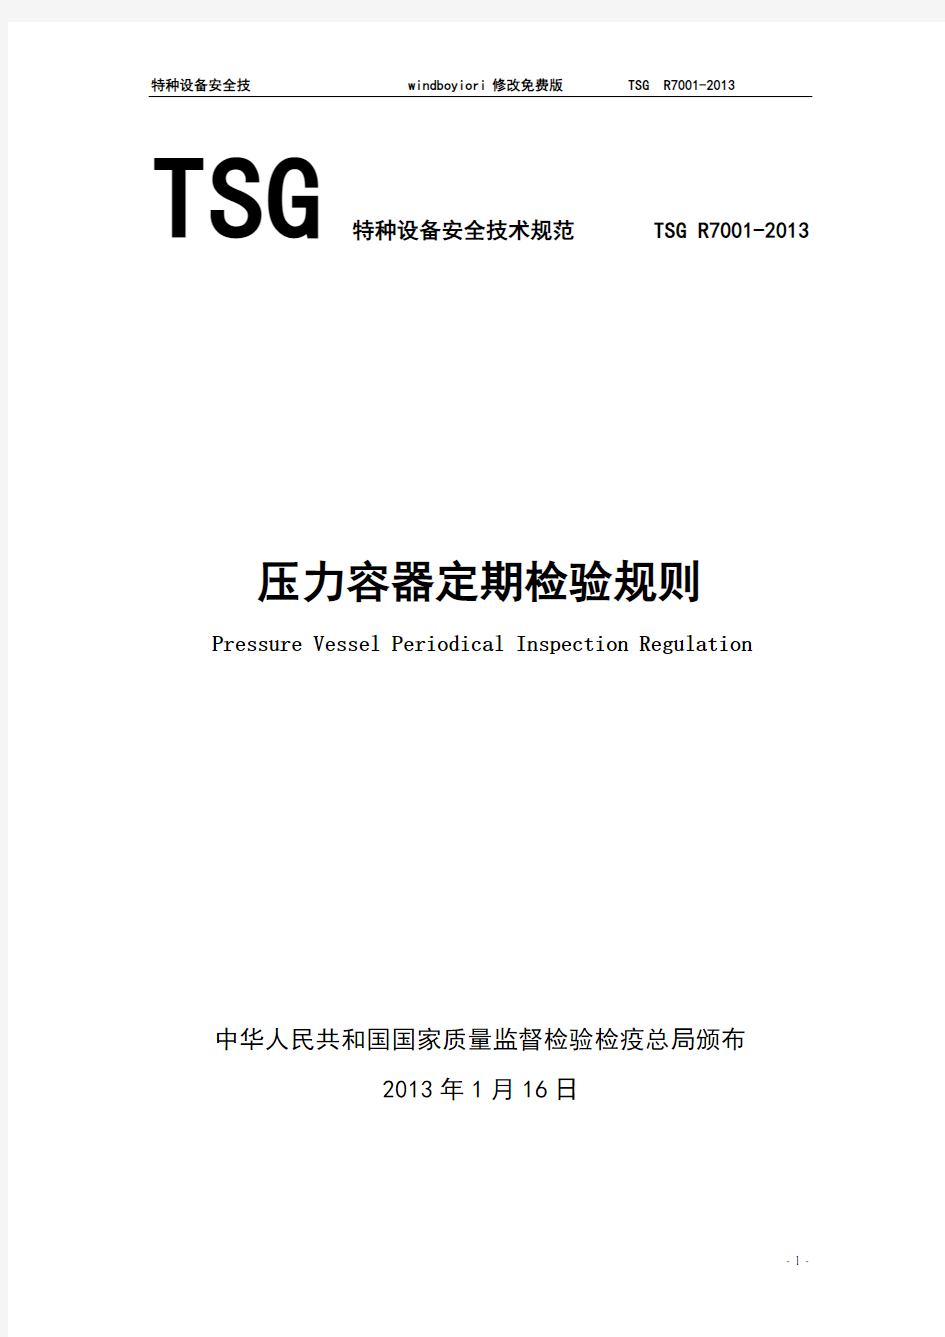 TSG R7001-2013压力容器定期检验规则